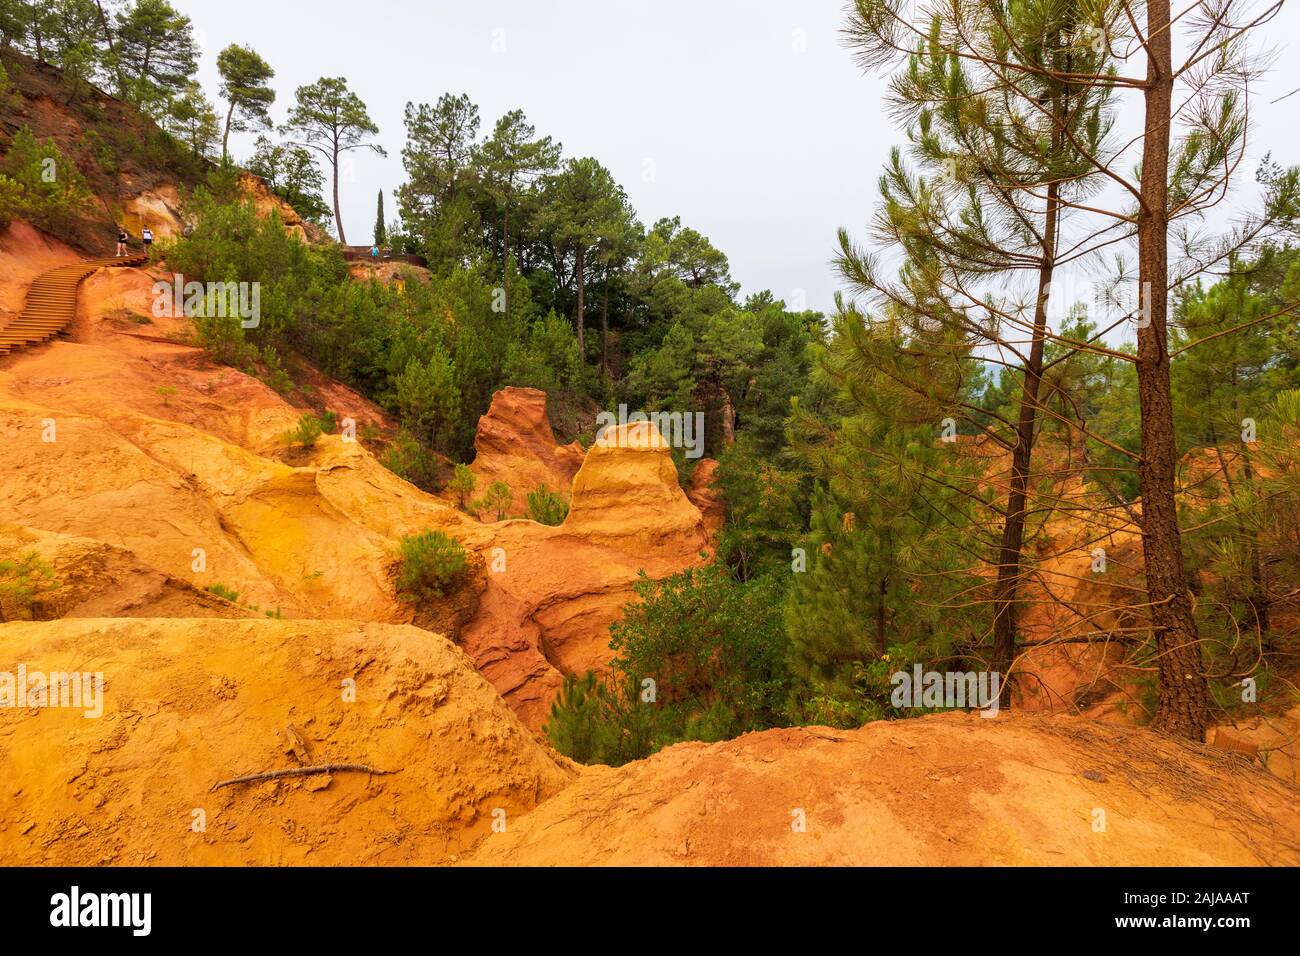 Sendero ocre en Roussillon, Sentier des ocres, ruta de senderismo en una colorida zona natural de acantilados rojos y amarillos en una cantera de pigmento ocre en desuso surrou Foto de stock